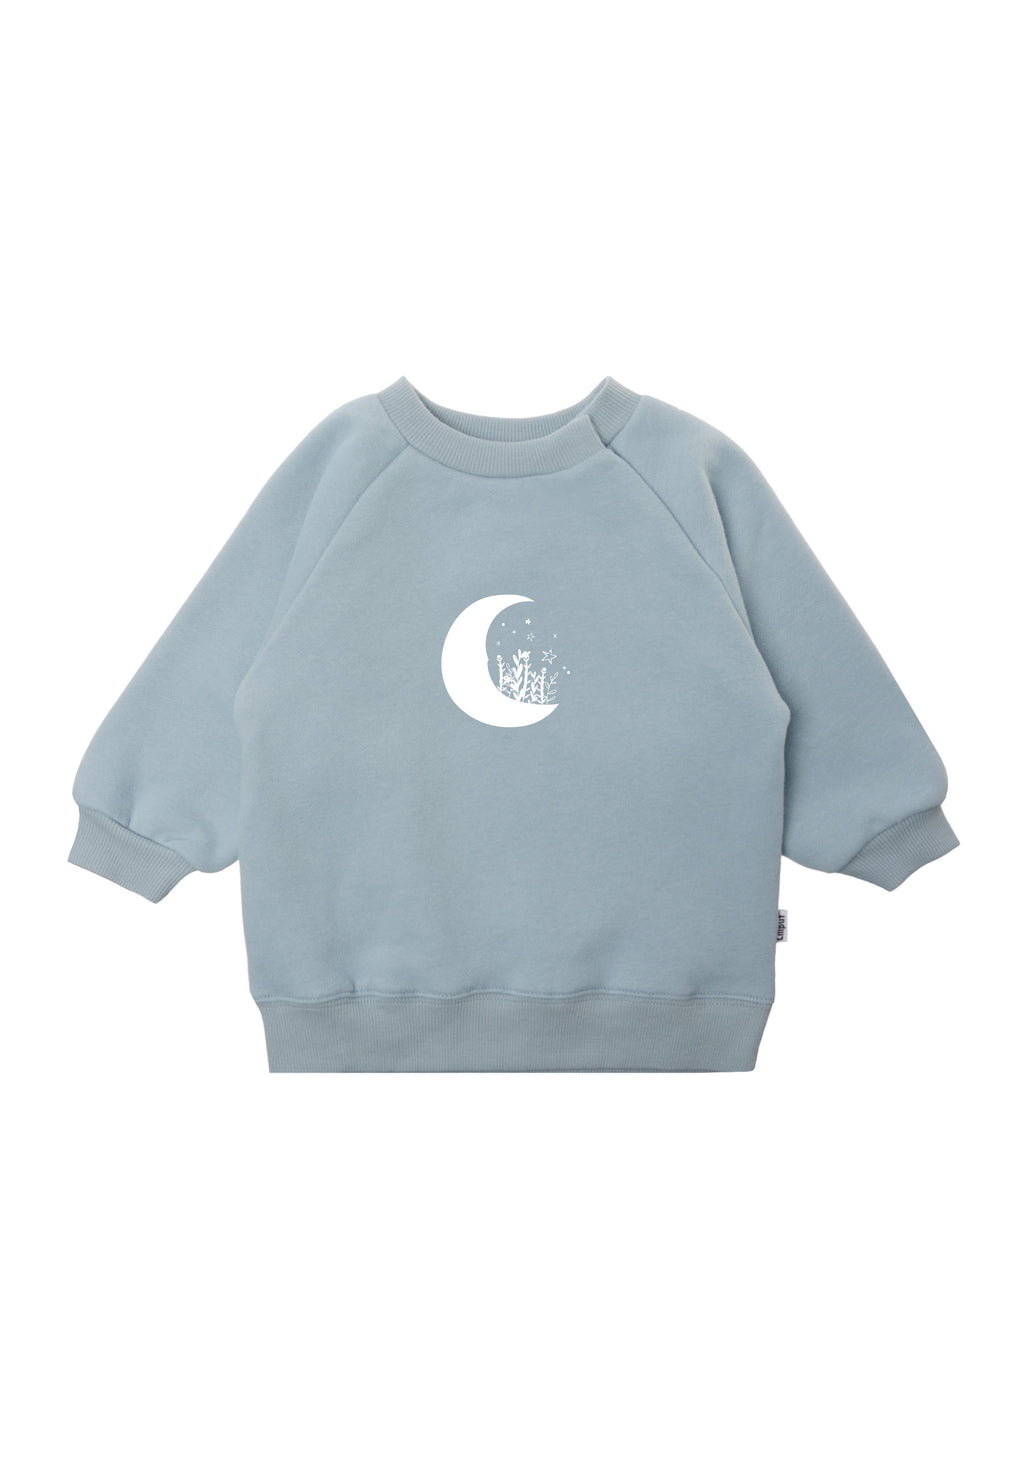 Sweatshirt in hellblau mit weißem Mond Aufdruck.